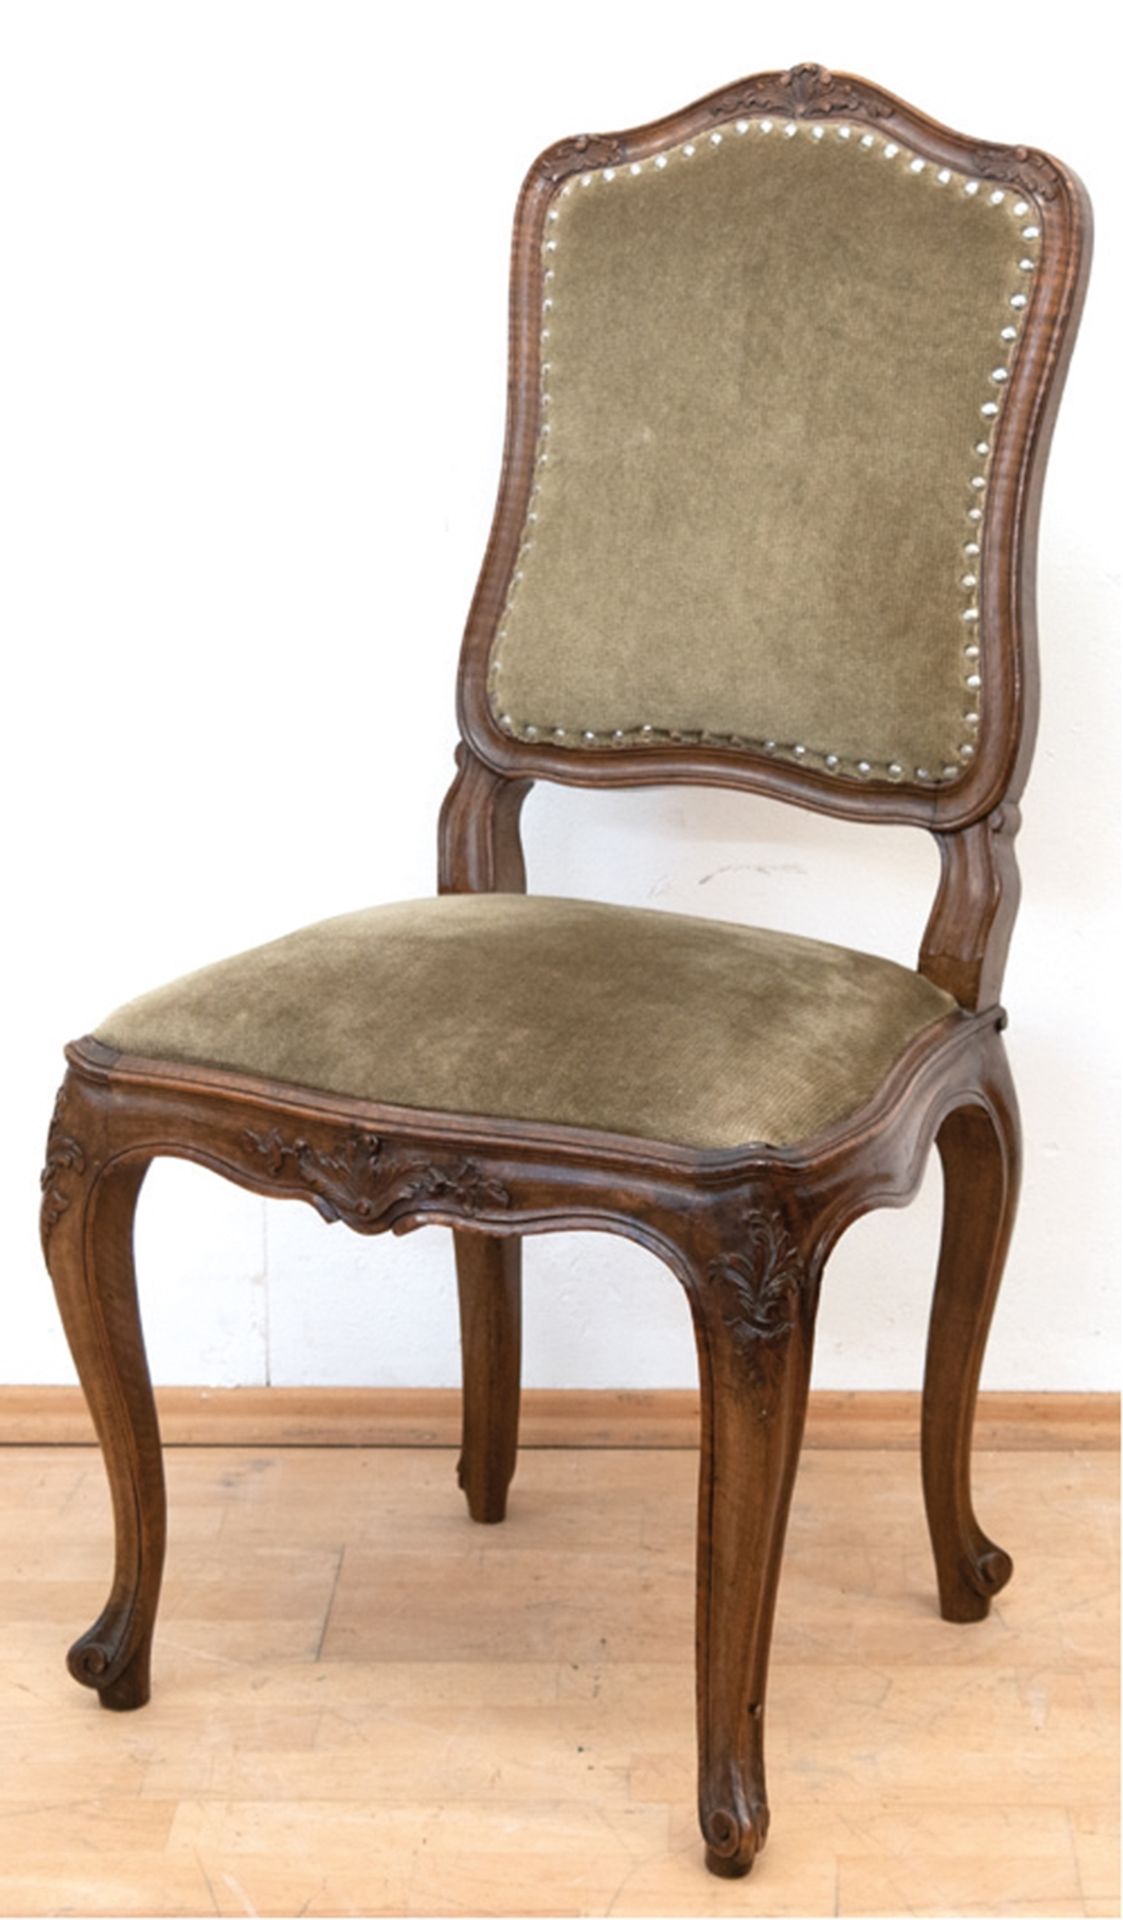 Stuhl im Barockstil, Nußbaum, floral beschnitzt, gepolsterter Sitz und Rückenlehne, grüner Mohairbe